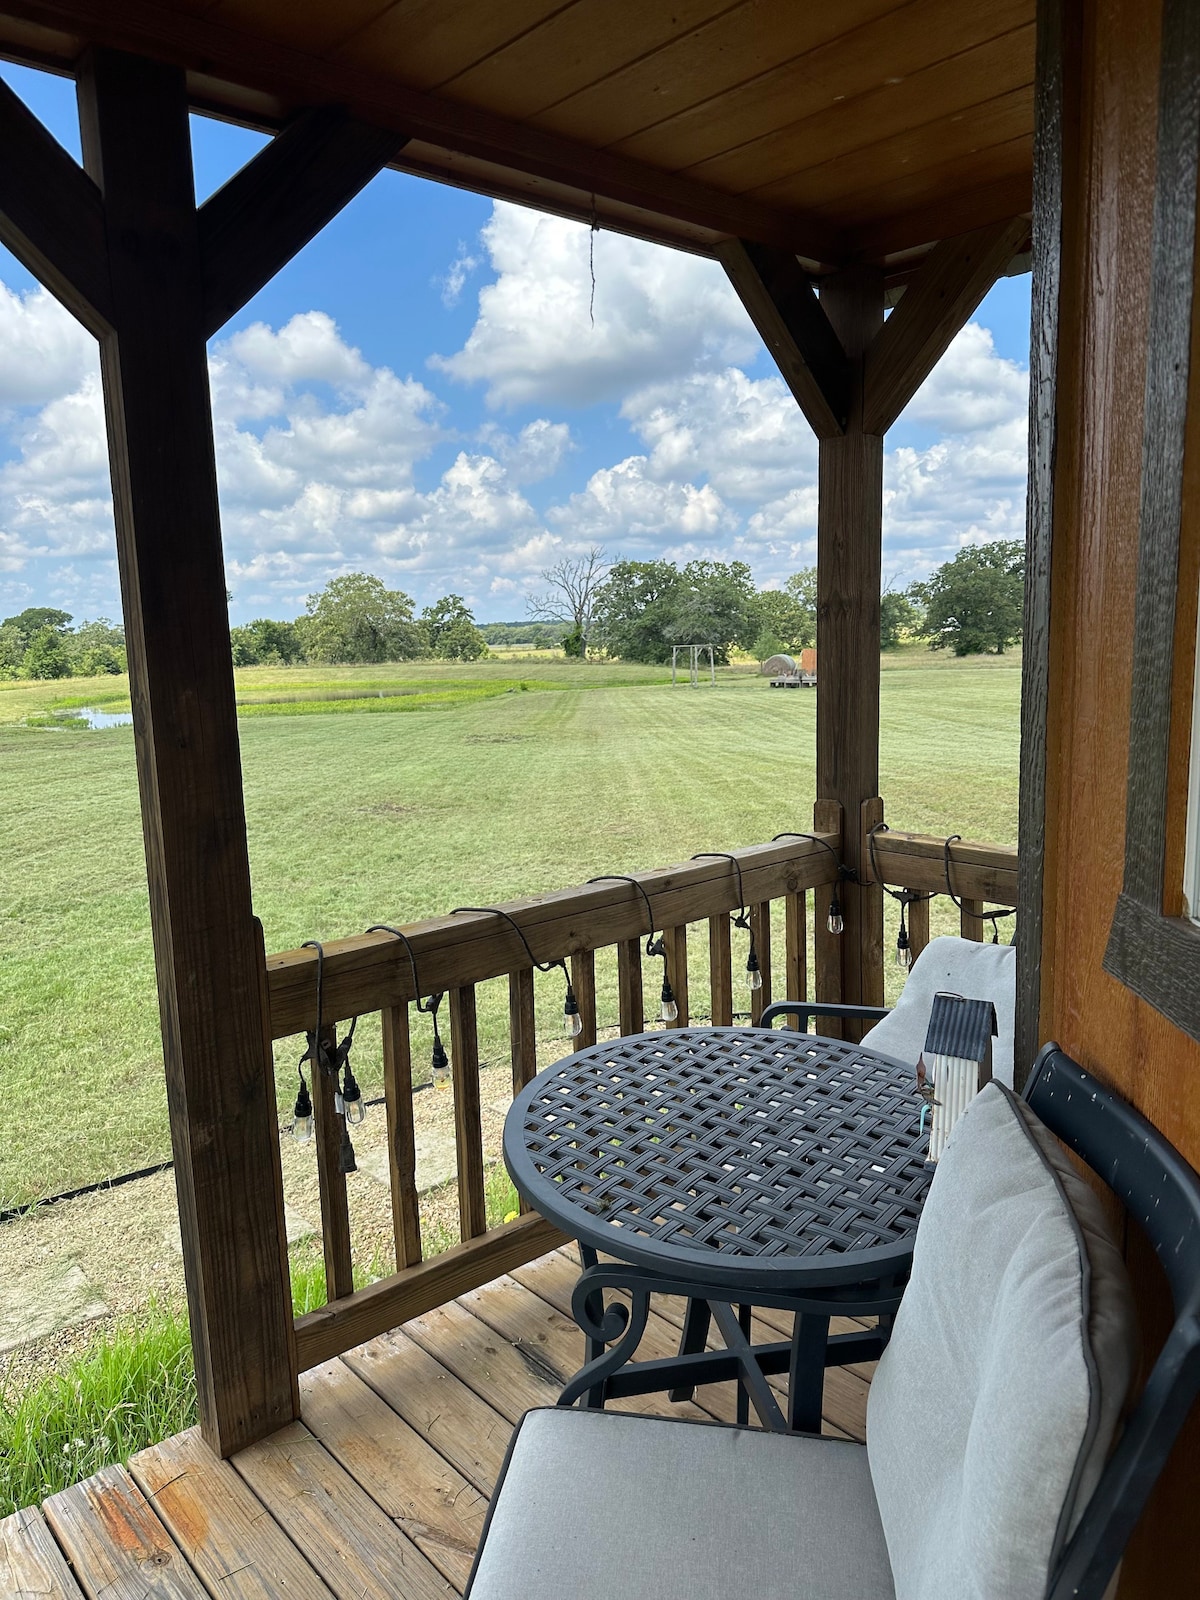 Peaceful Farmhouse cabin on acres